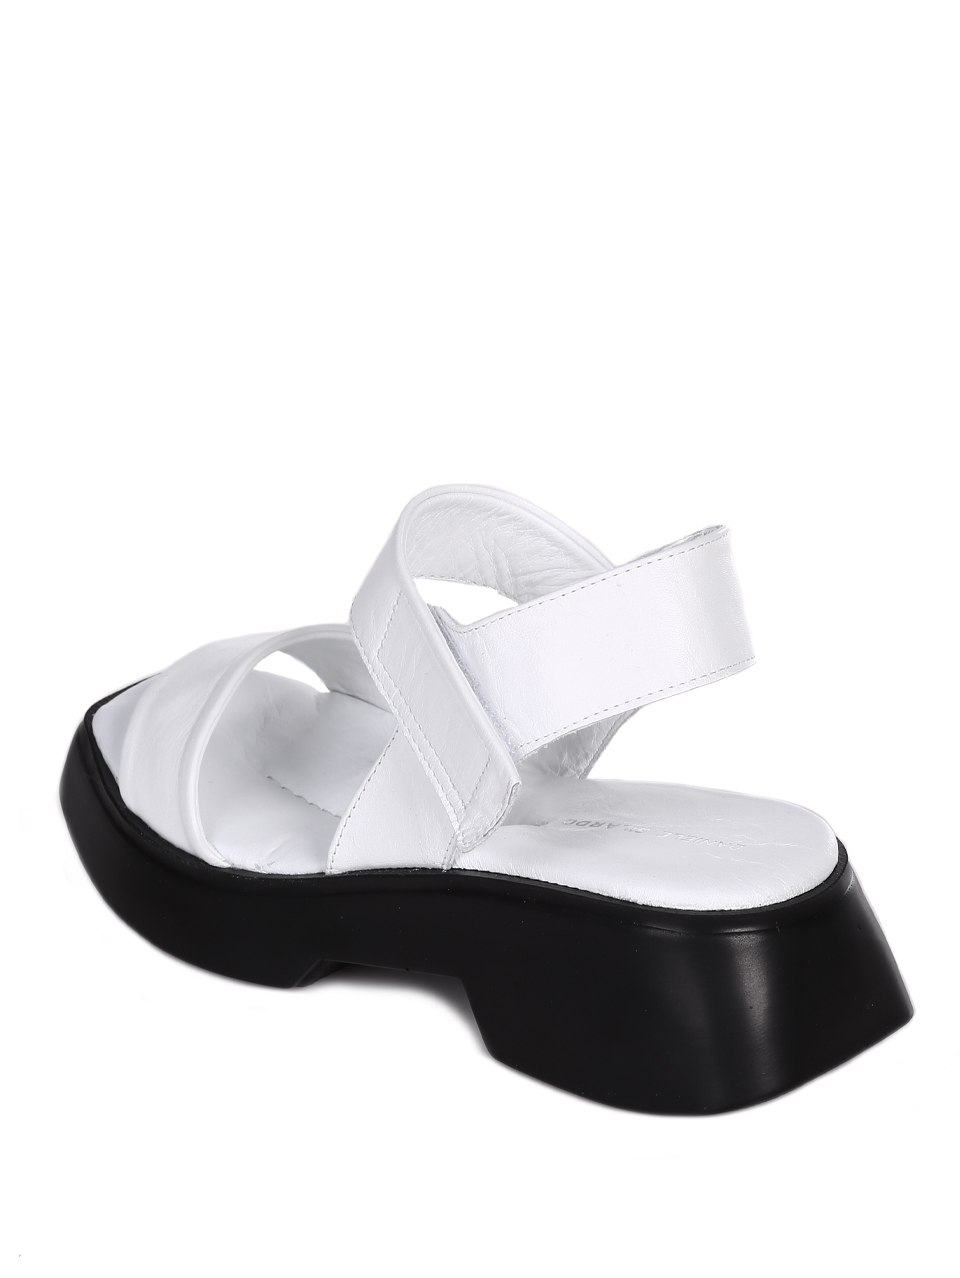 Ежедневни дамски сандали на платформа от естествена кожа 4AT-23285 white